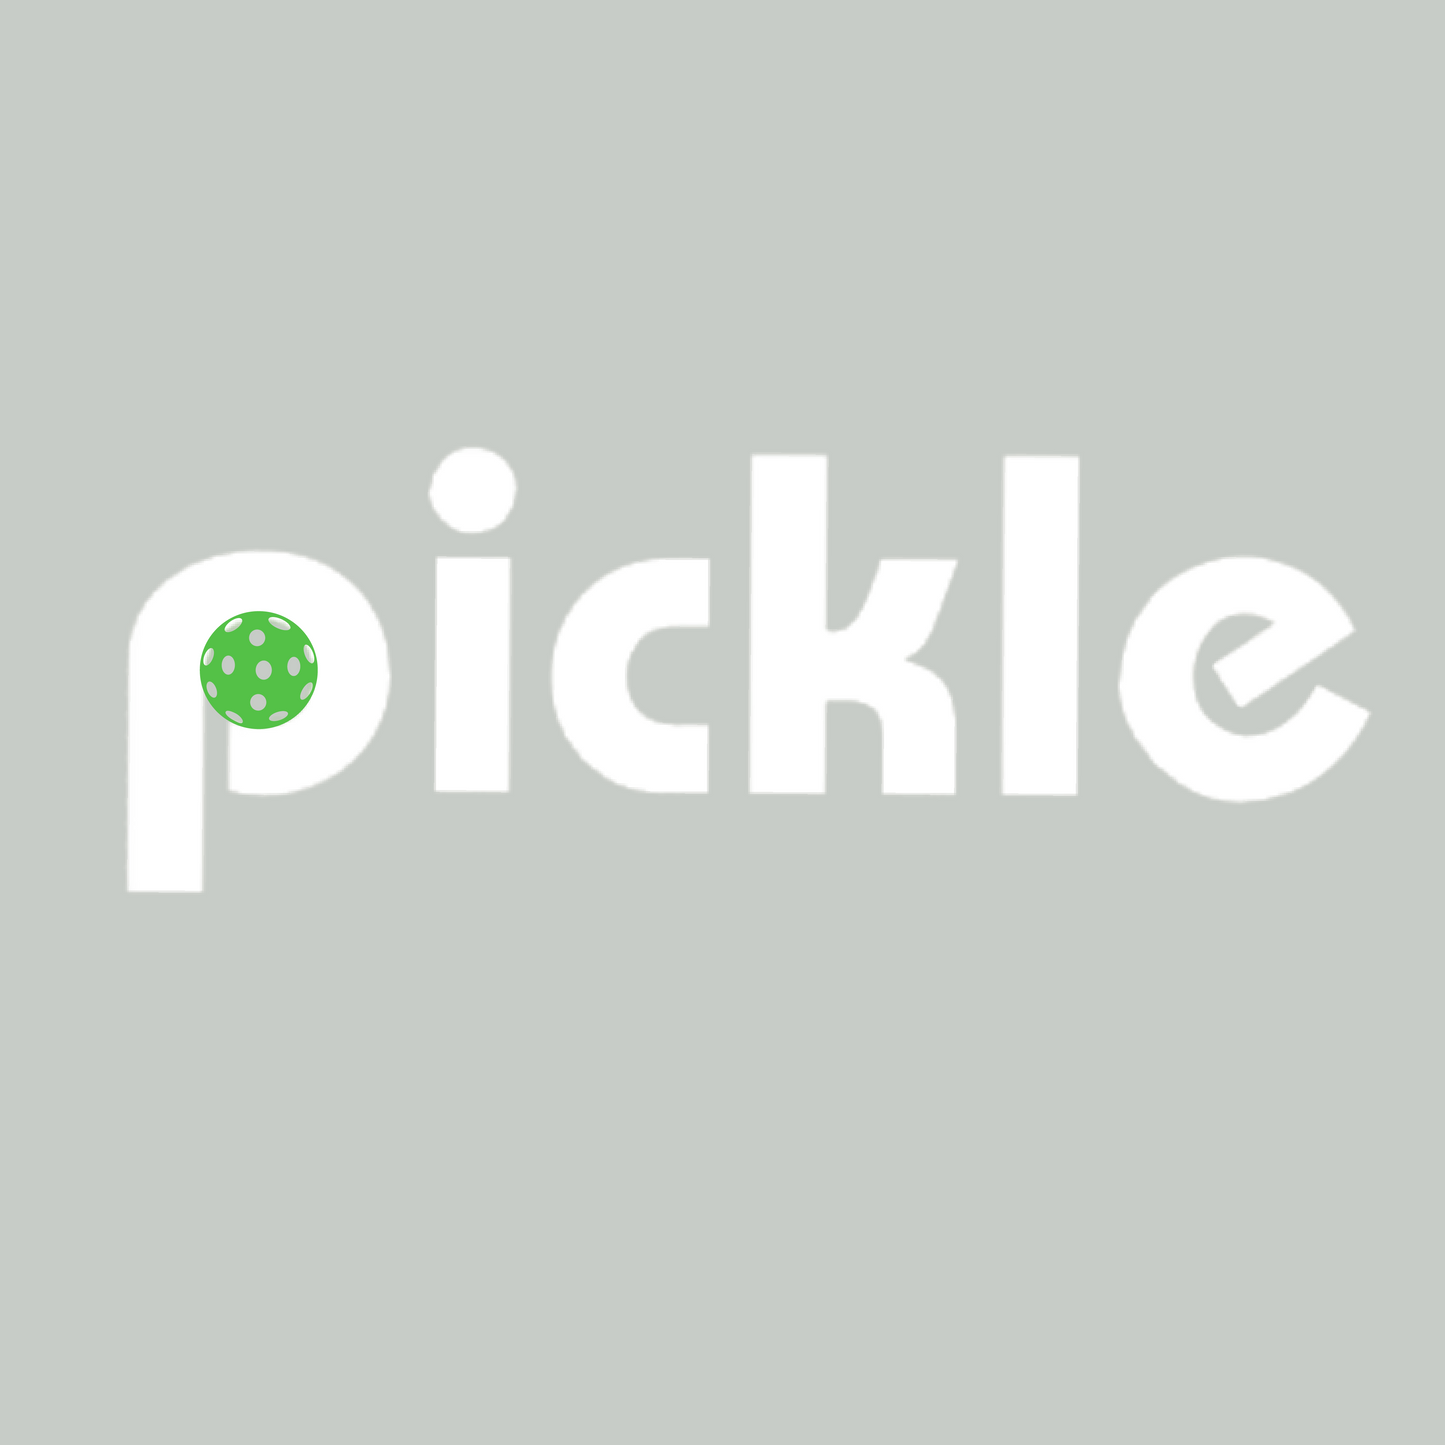 Pickle | Women's Flirty Pickleball Skort